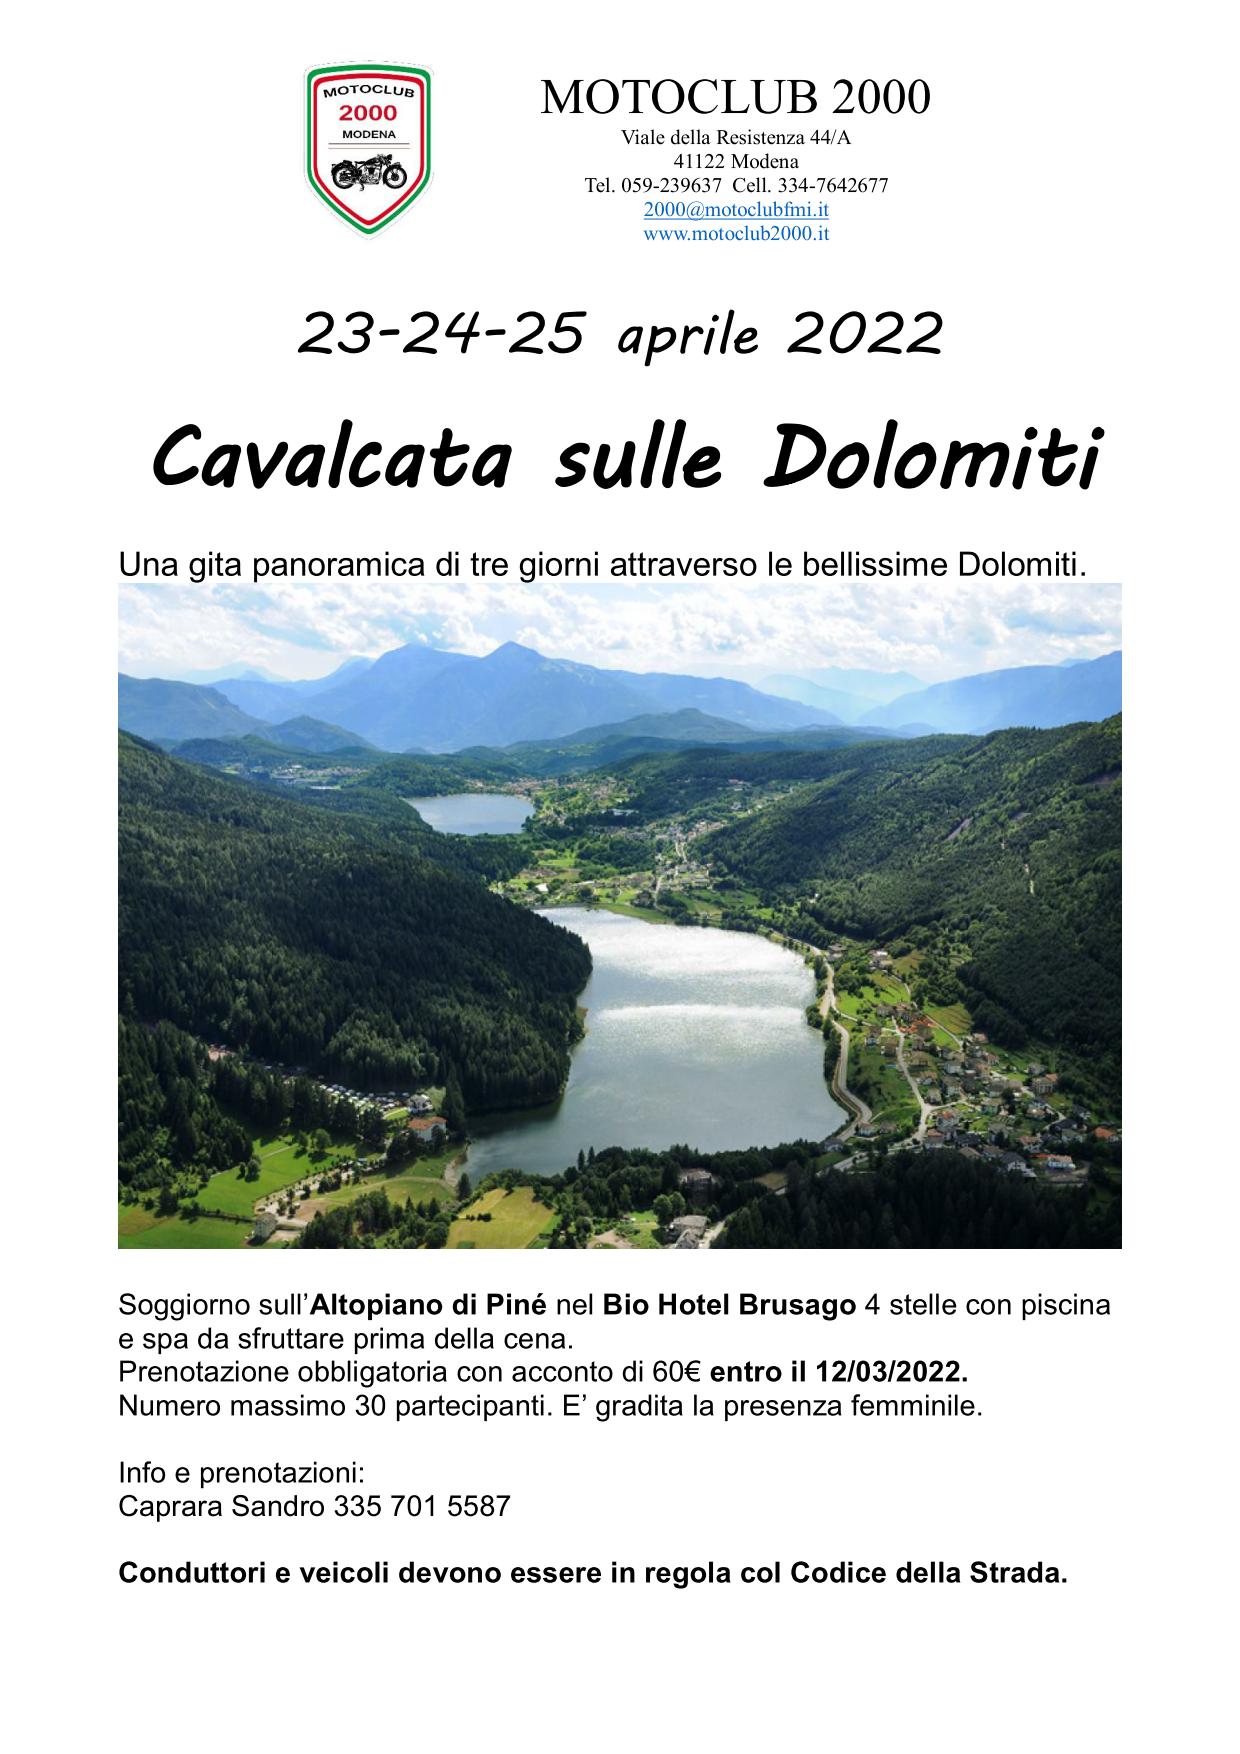 23-24-25 aprile 2022 Cavalcata sulle Dolomiti - Moto Club 2000 ASD - Modena